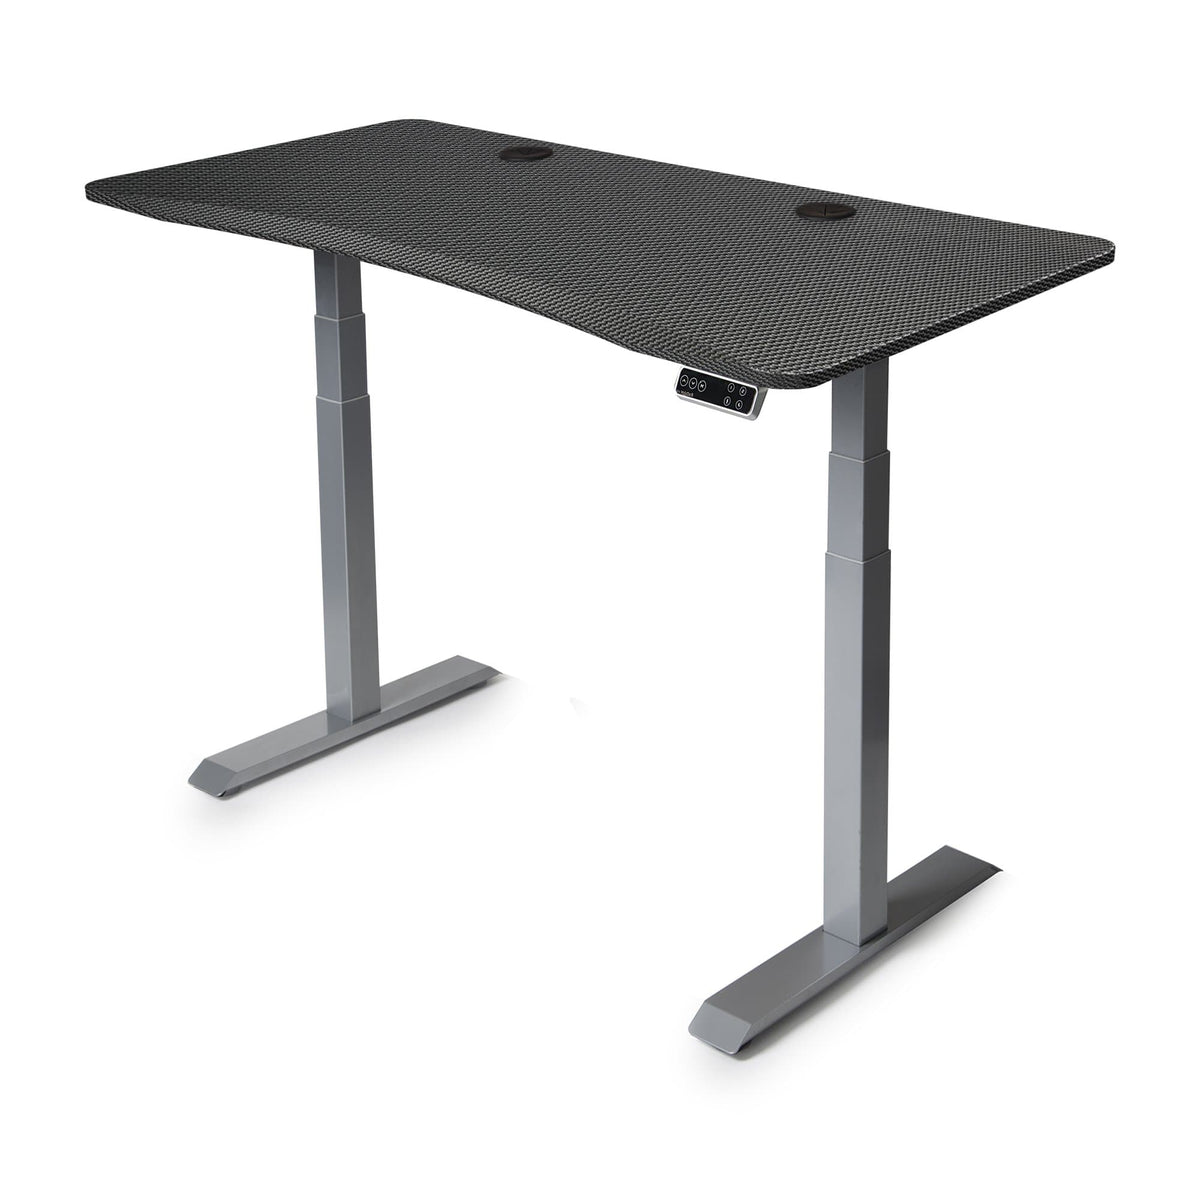 60x30 Height Adjustable Desk - Frame Color: Gray - Desktop Color: Carbon Fiber